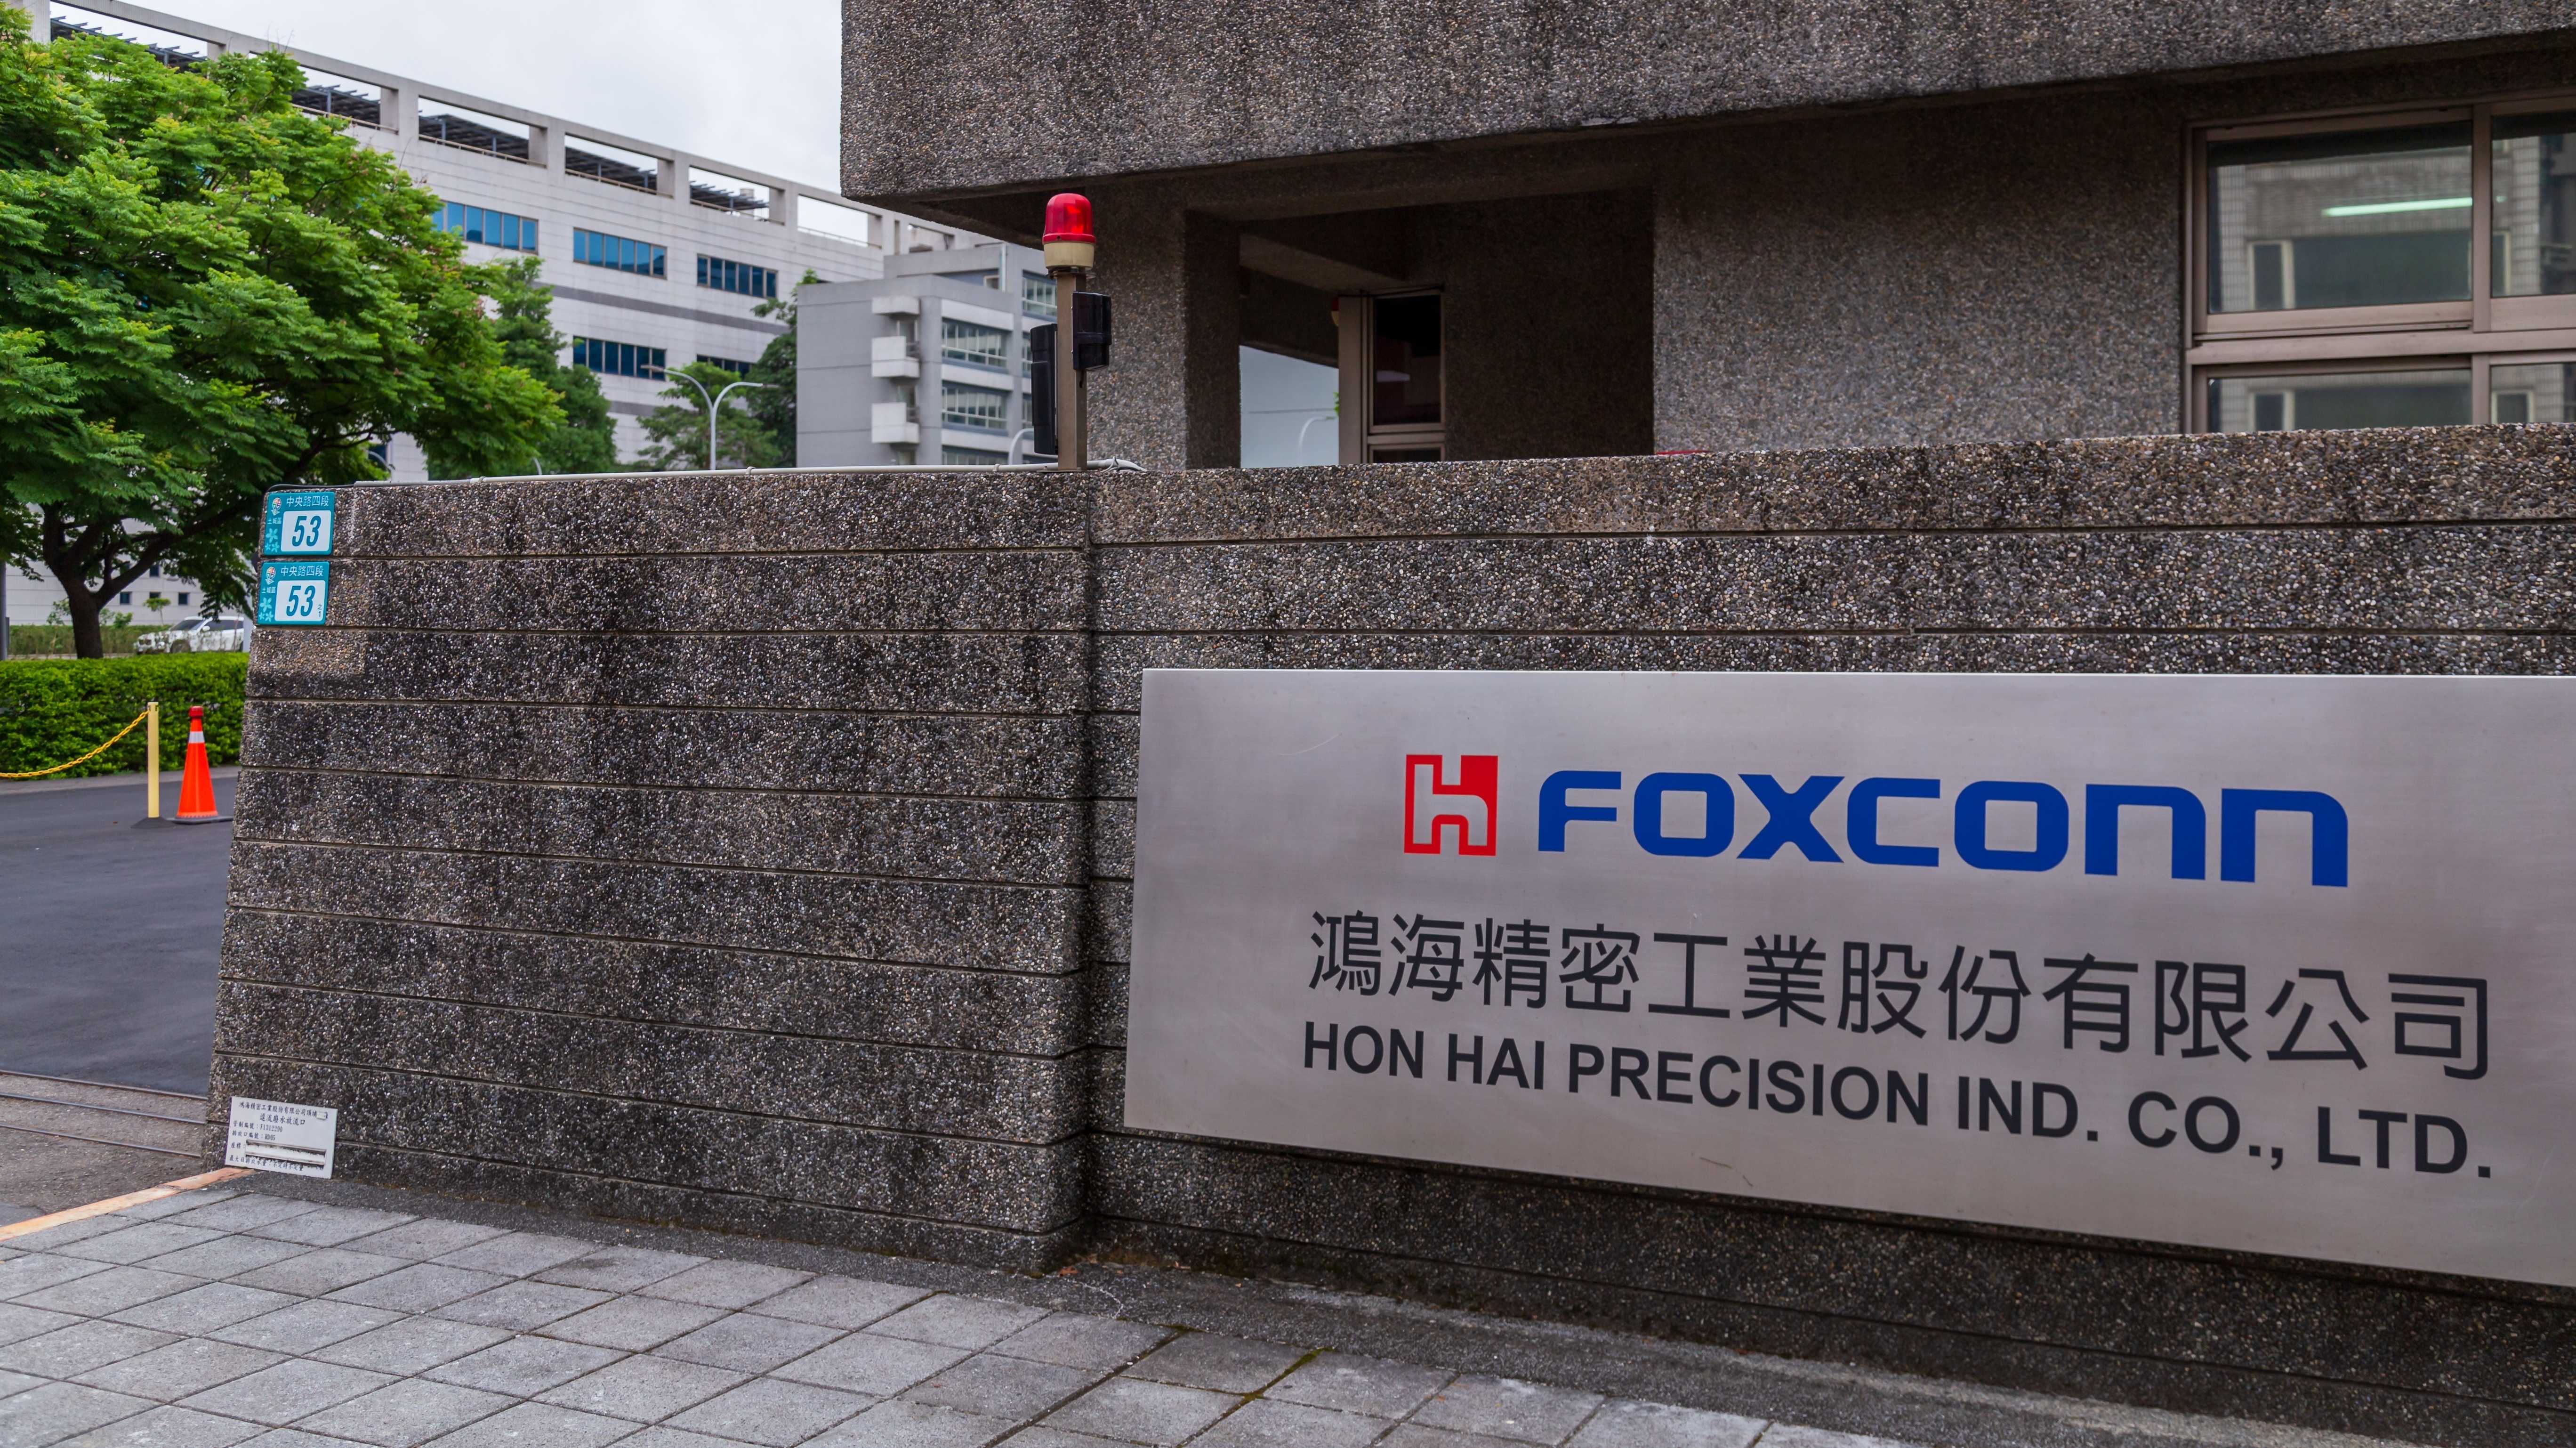 Firmenschild von Foxconn